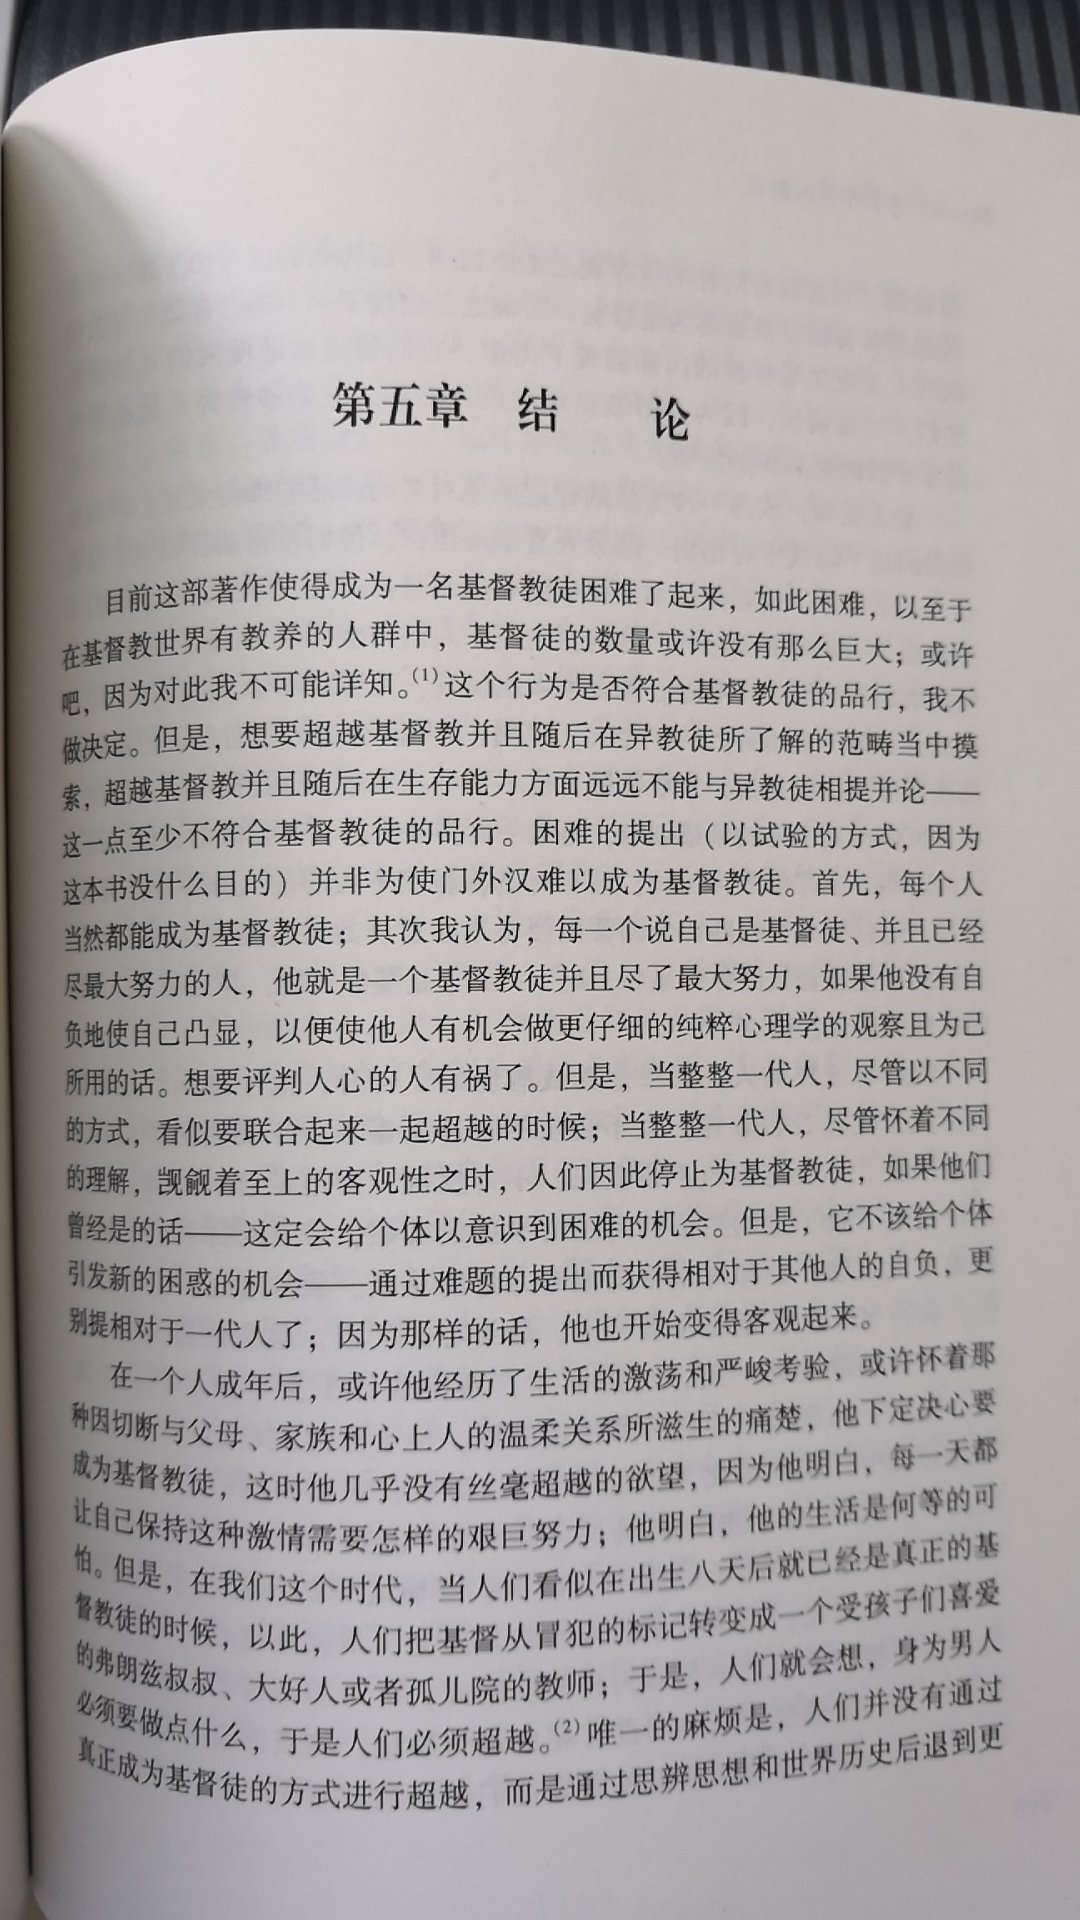 王齐的译本和京不特的风格不同，但仍然很棒。